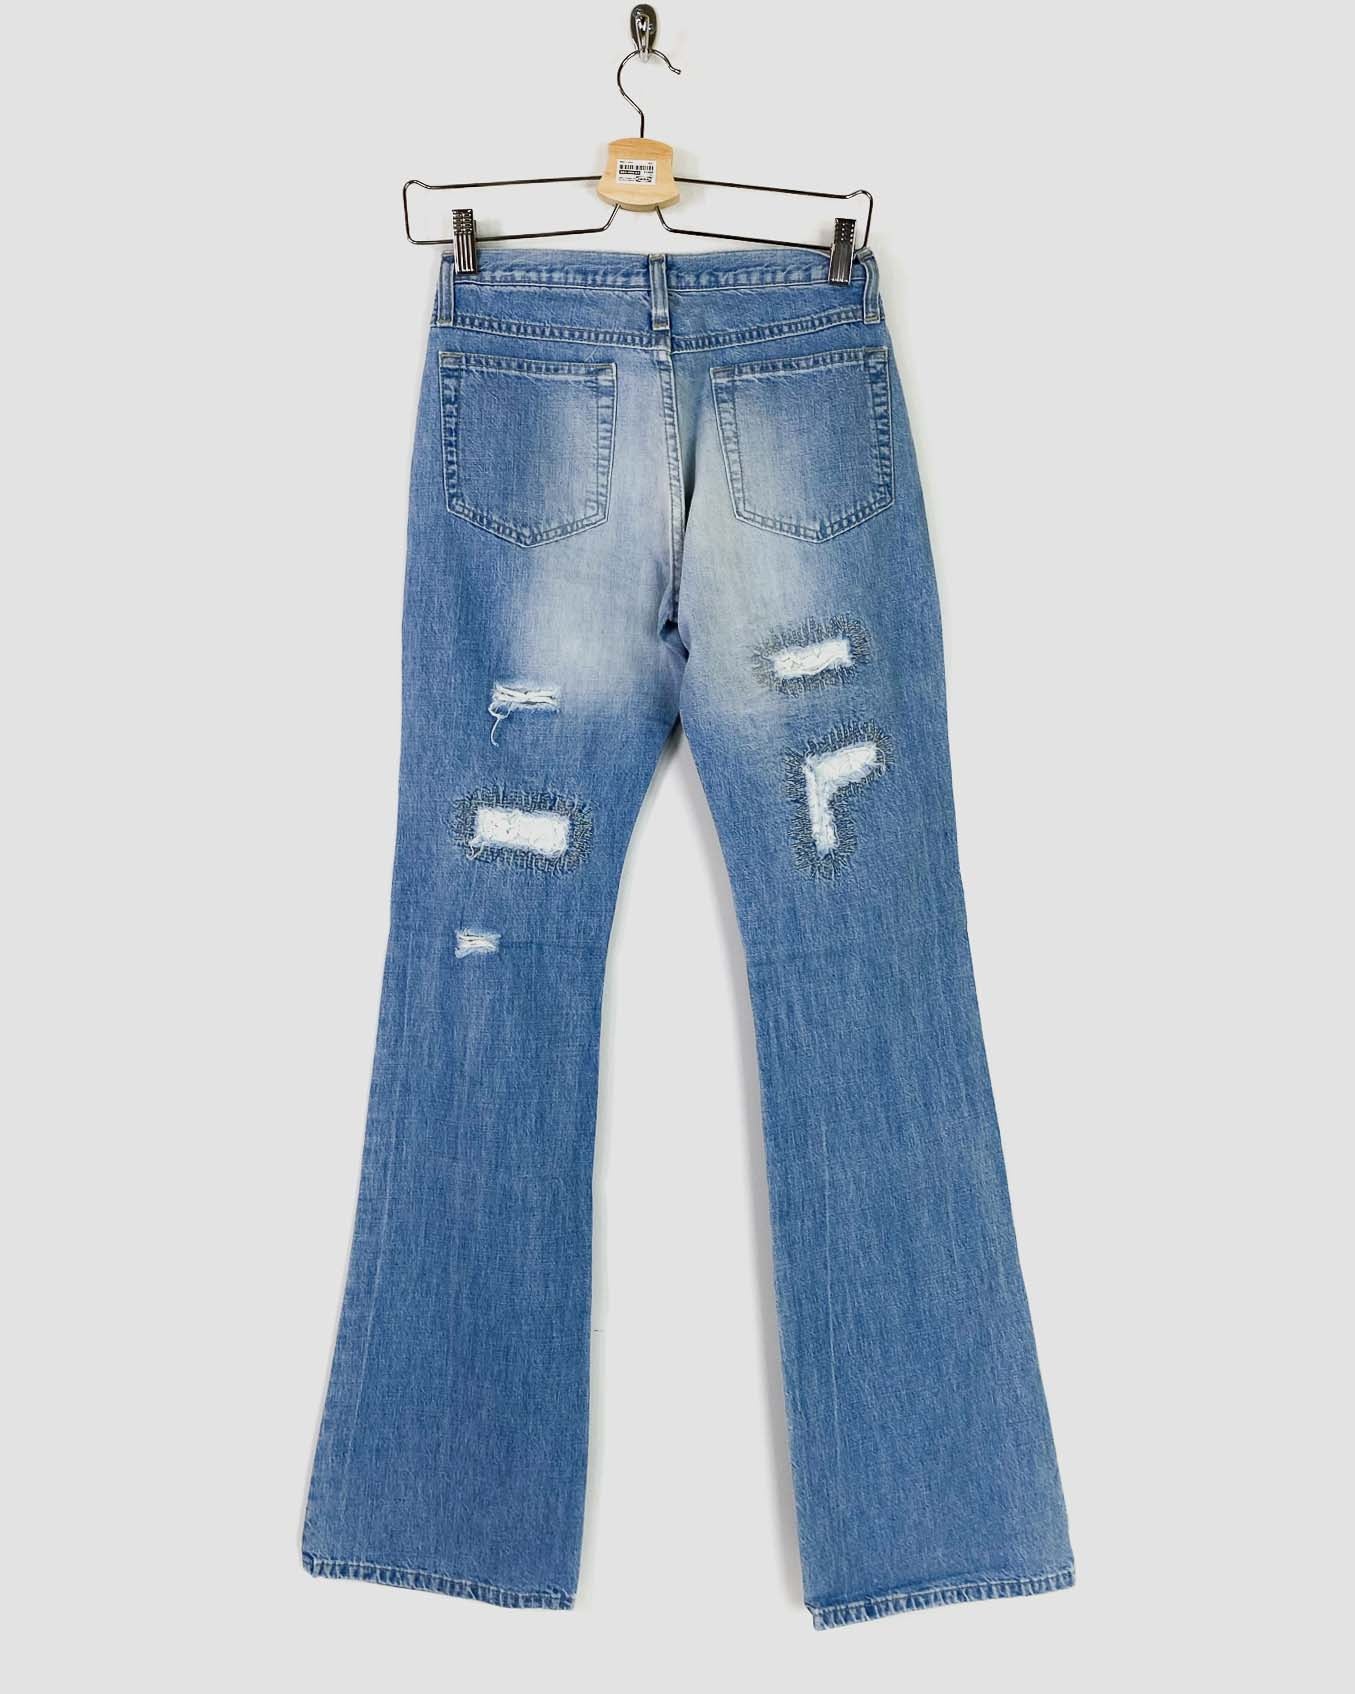 Distressed Jeans a Zampa Taglia 40